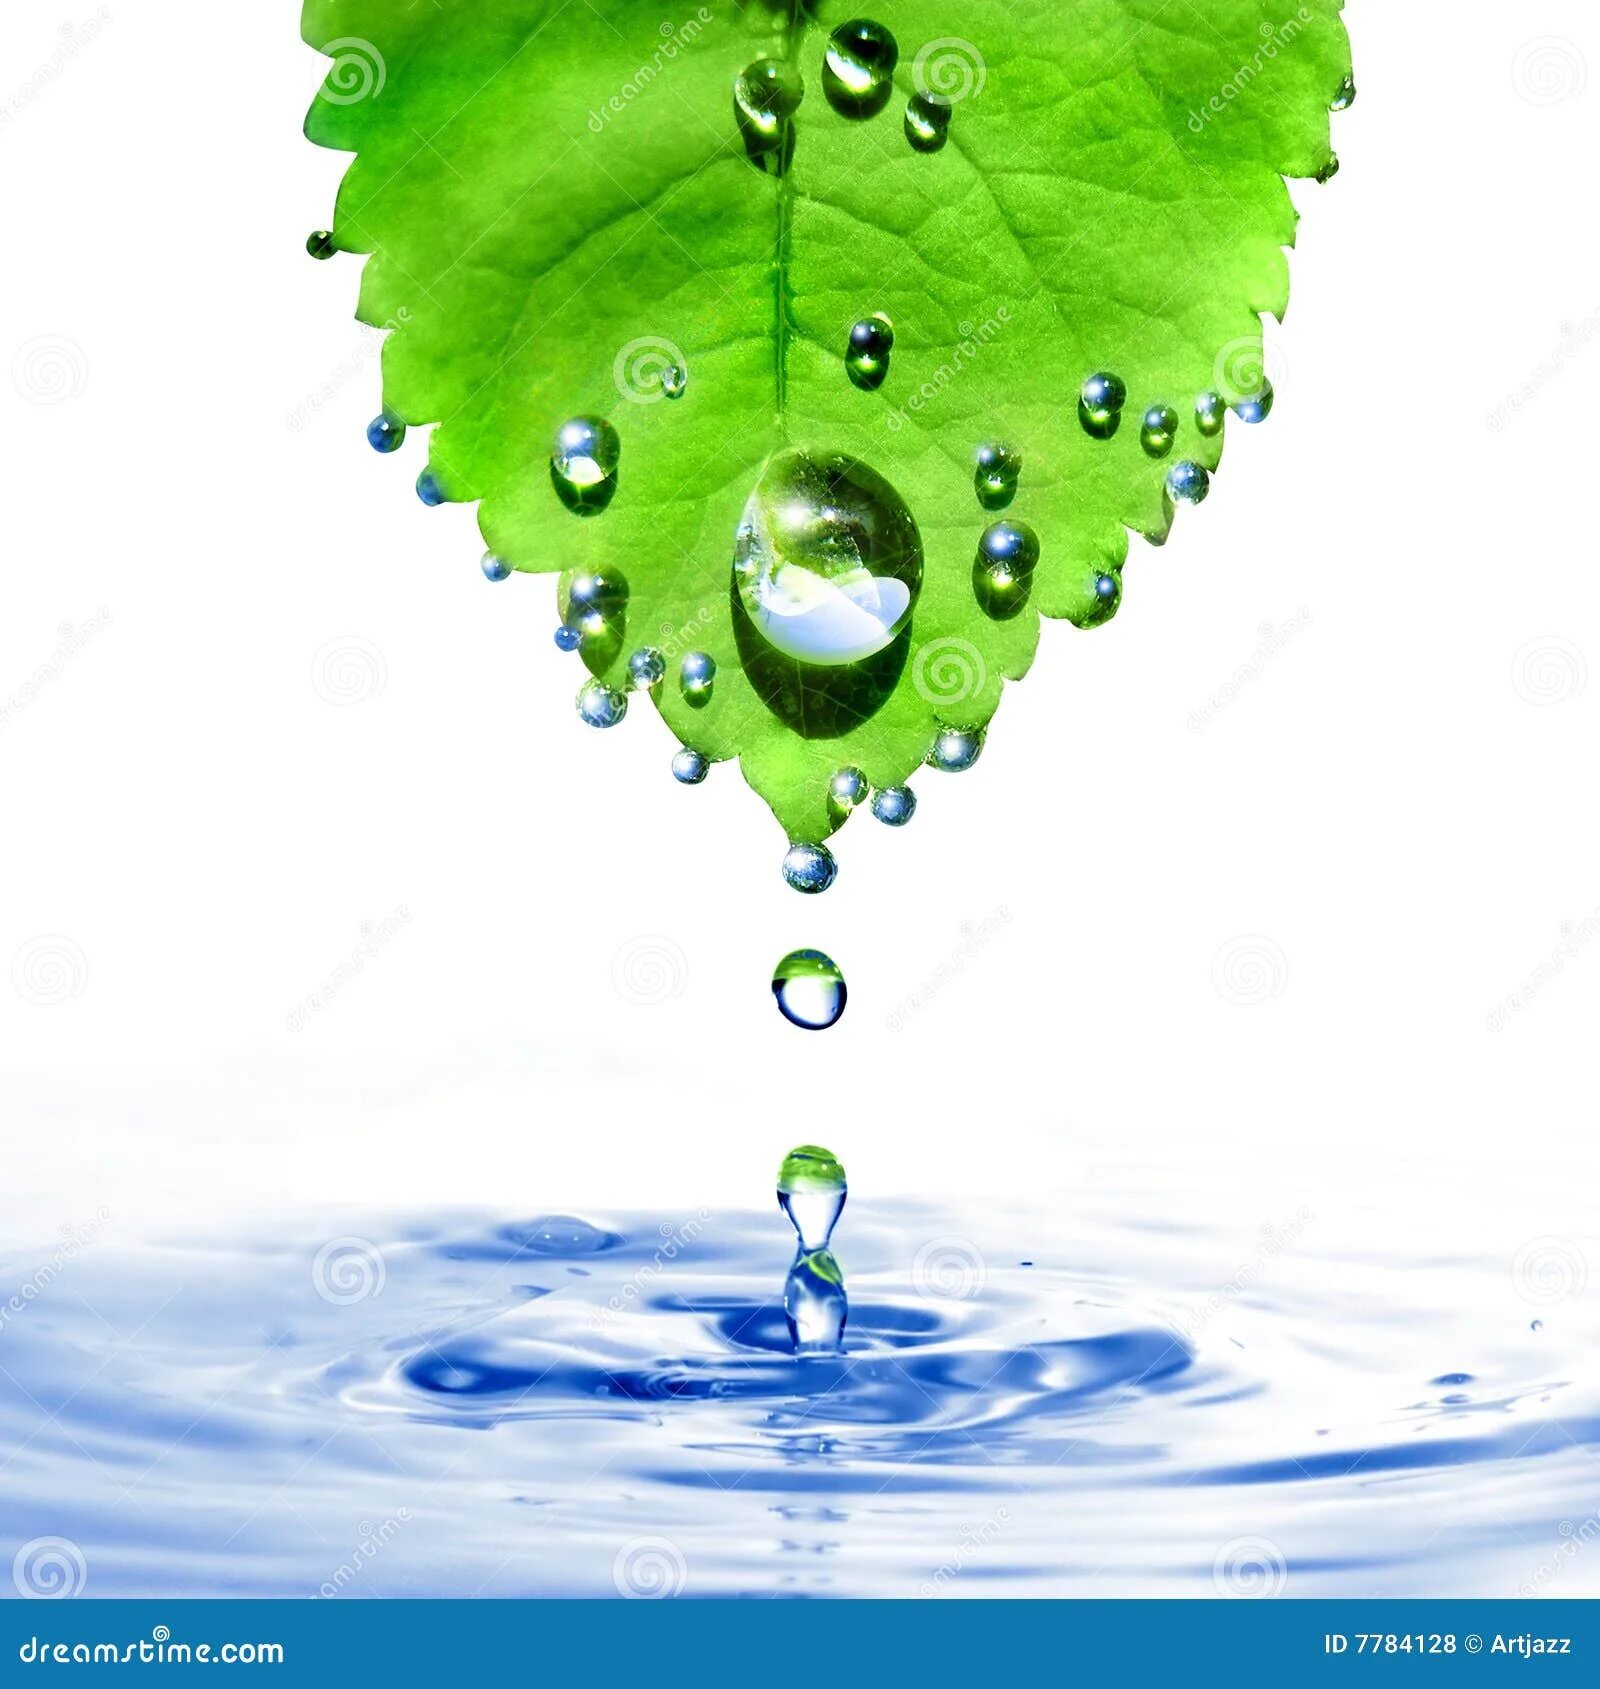 Капля падает с листа. Капля воды на листе. Капелька воды на листочке. Листья на воде. Капля воды стекает с листка.